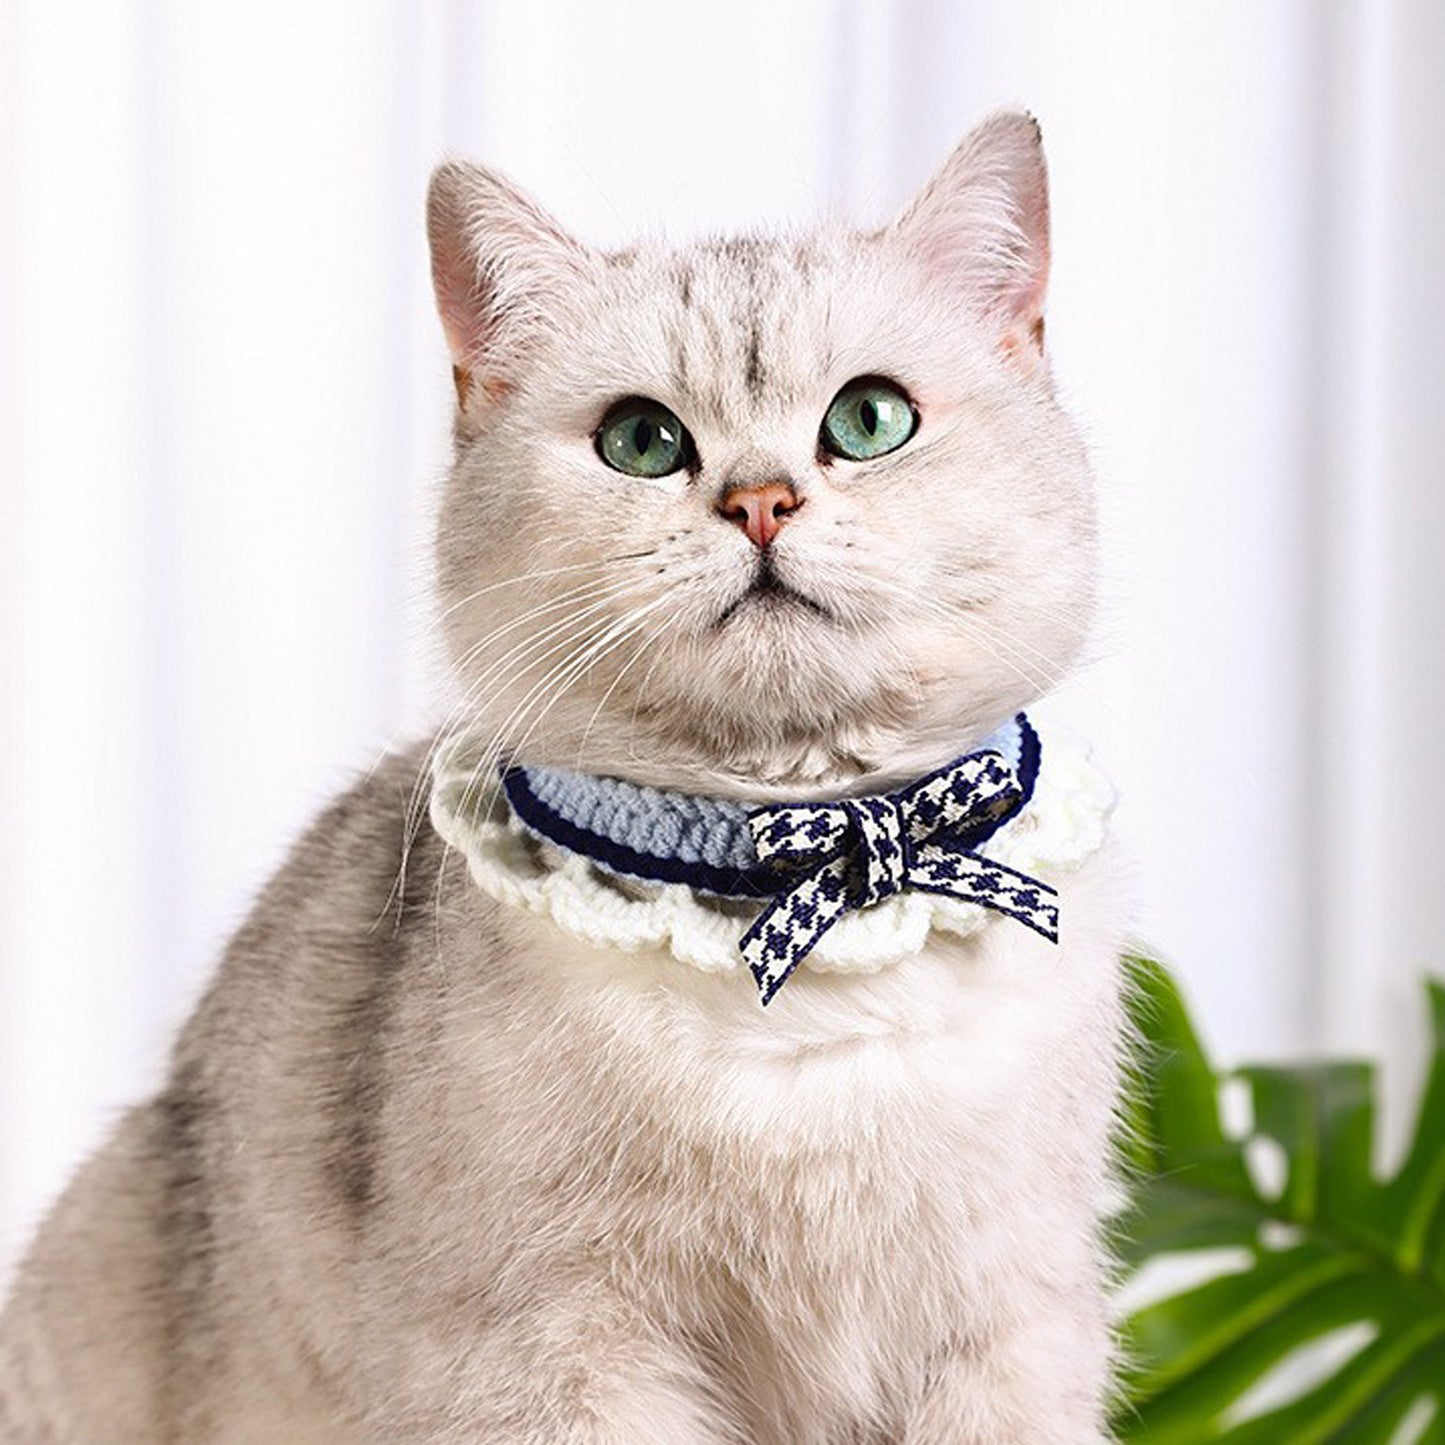 Lovely Crochet Pet Collar Cat Dog Neckwear.